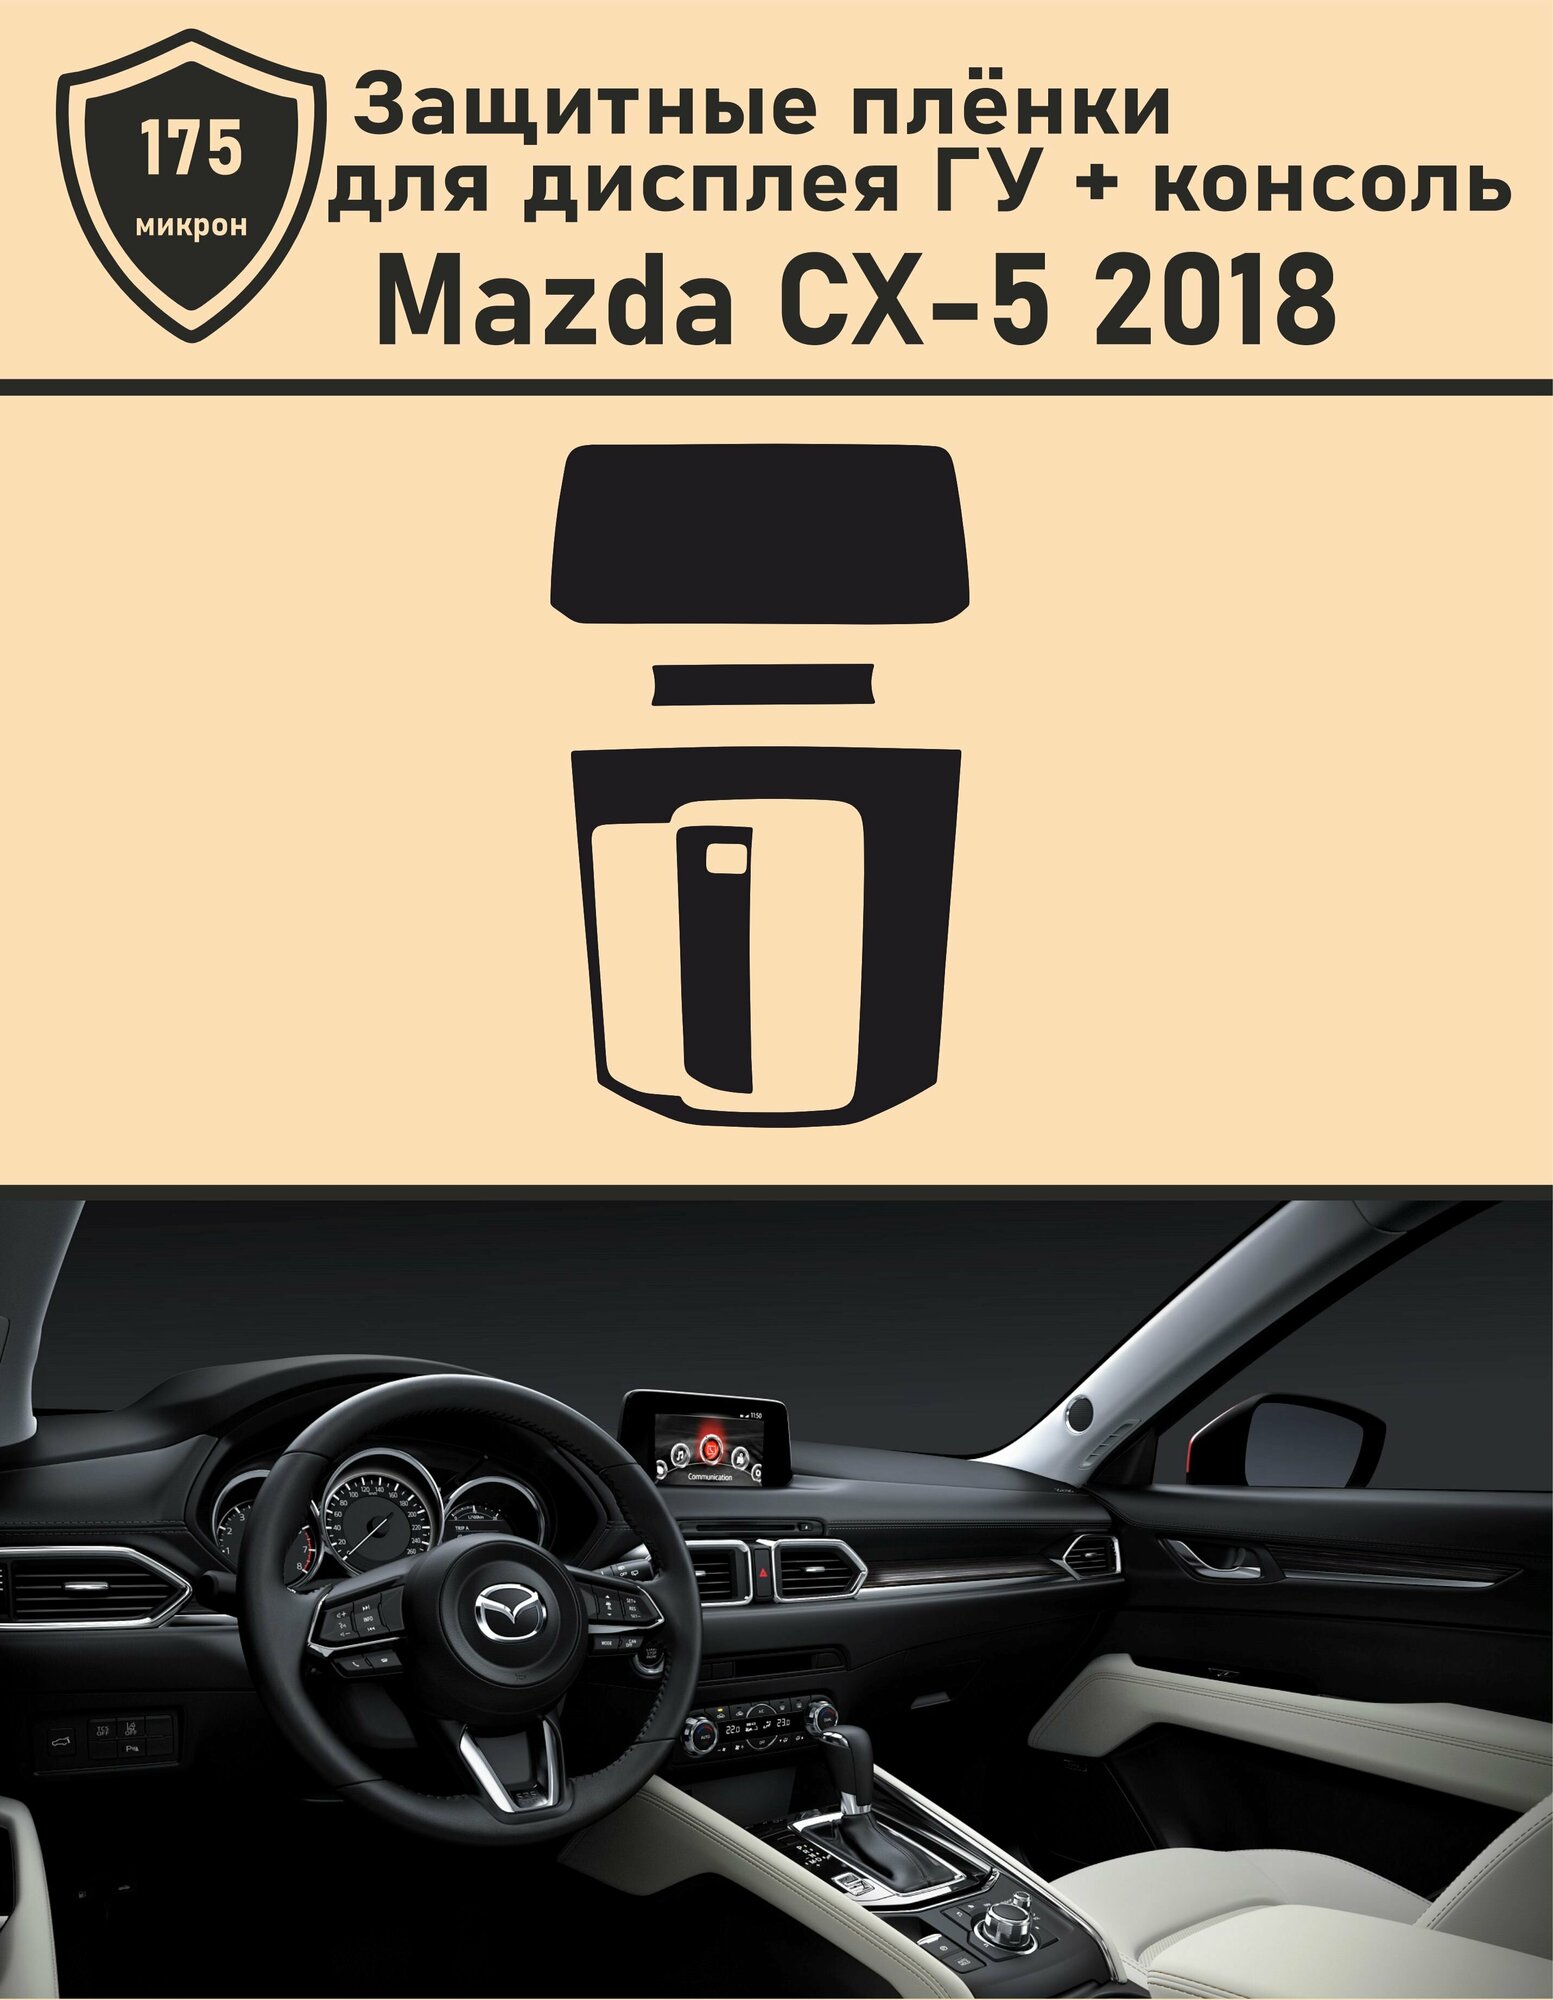 Mazda CX-5 2018/Защитная пленка для дисплея ГУ+Консоль